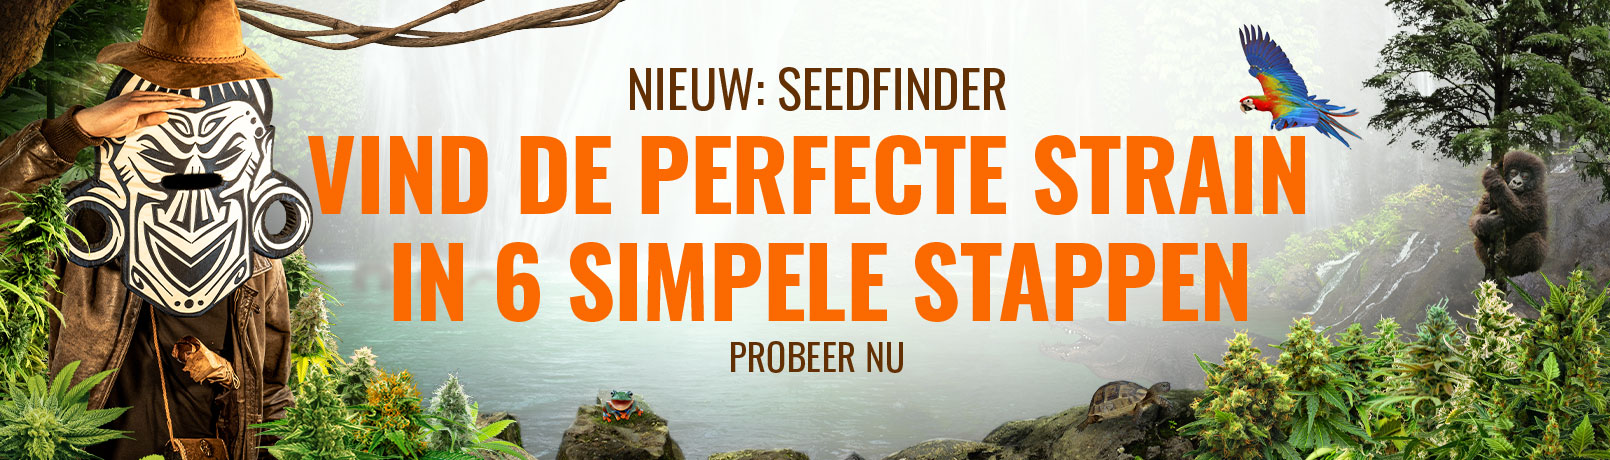 Seedfinder Current Offer Banner NL_offer